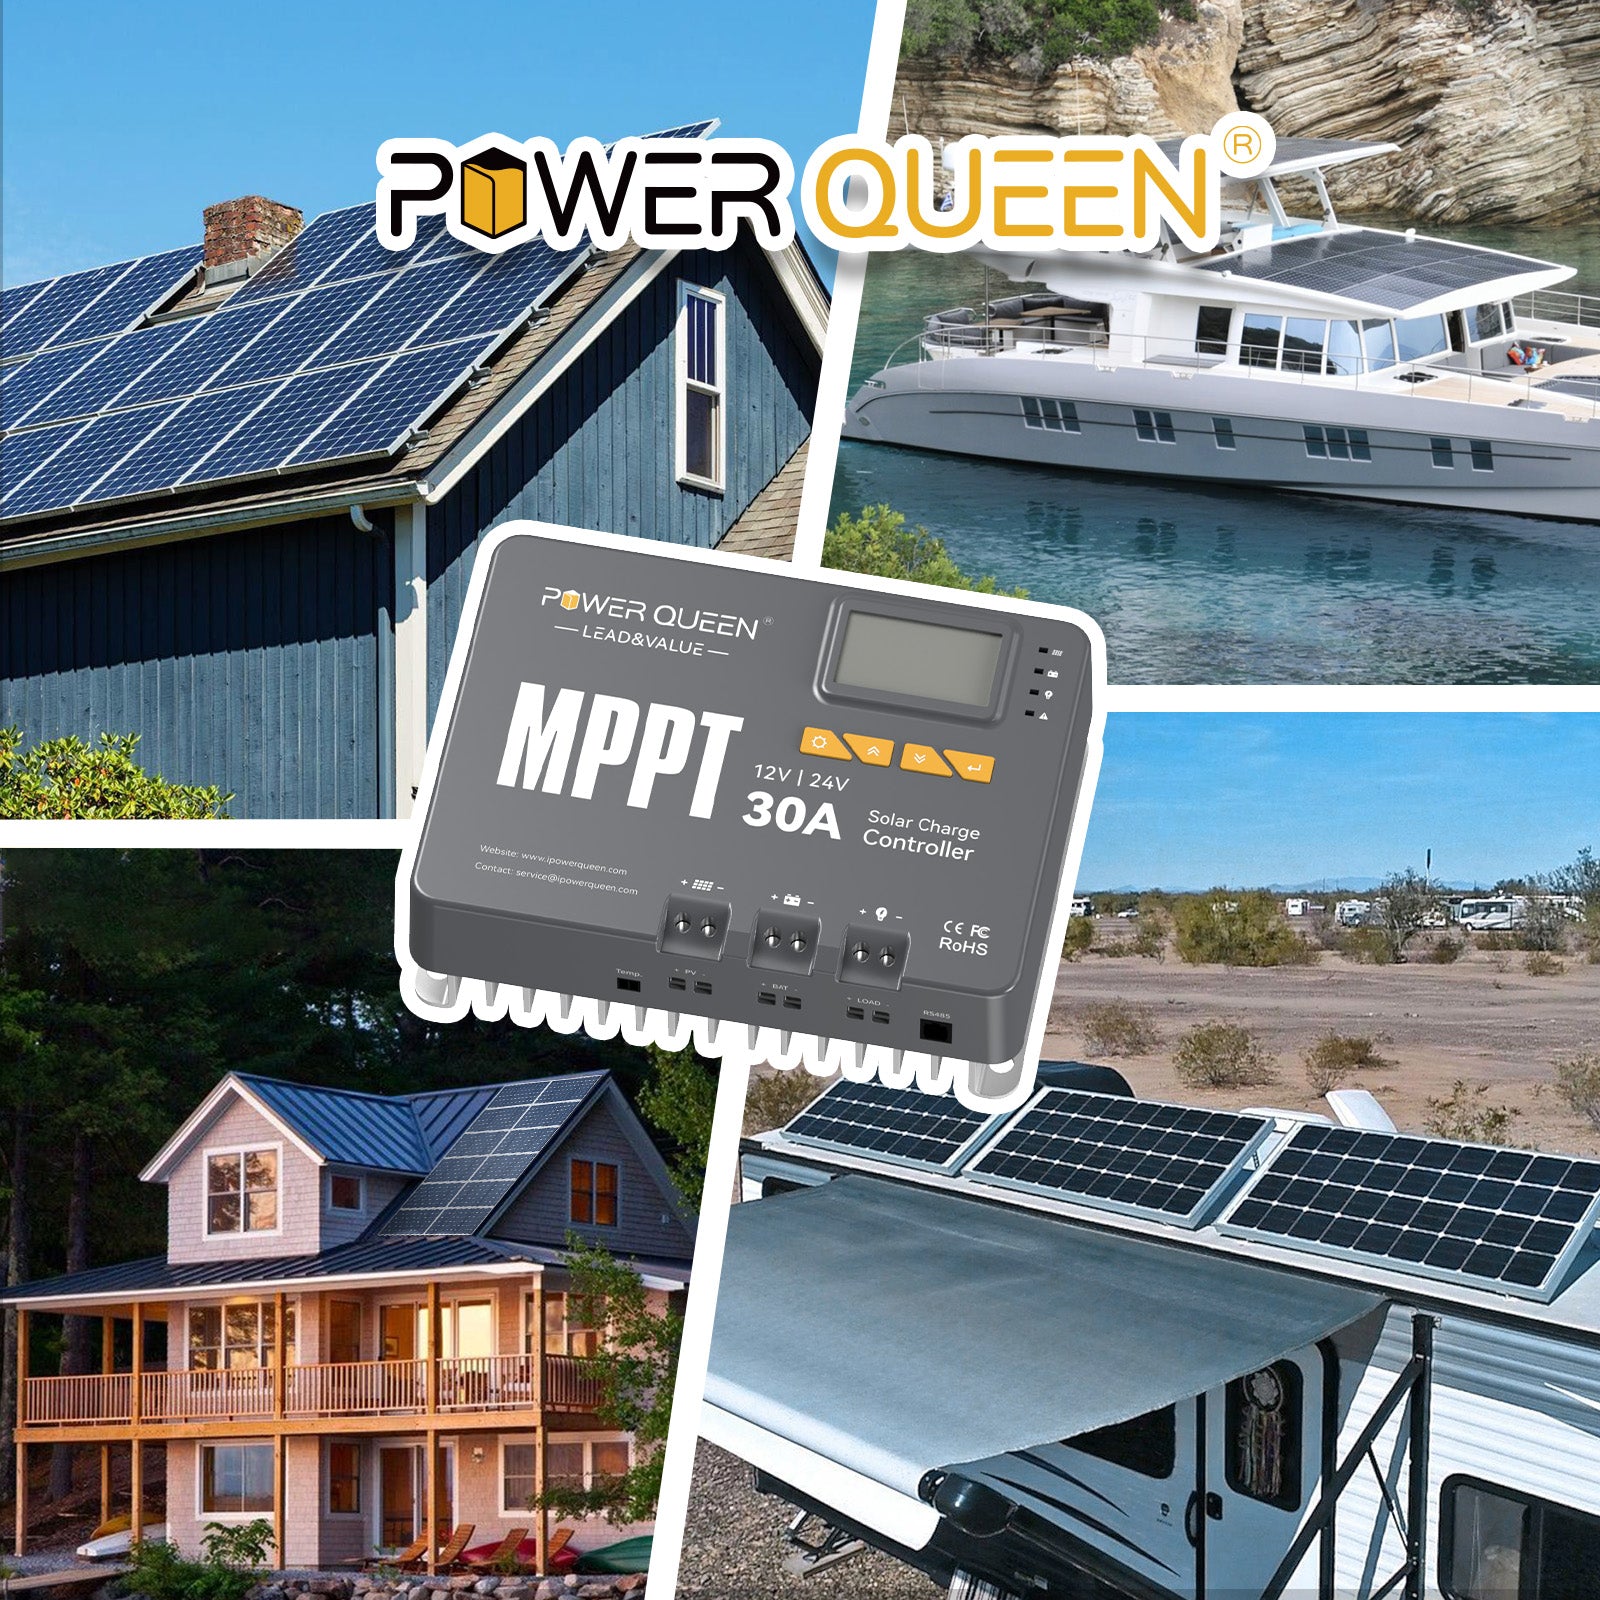 Contrôleur de charge solaire Power Queen MPPT 12/24 V 30 A avec module Bluetooth